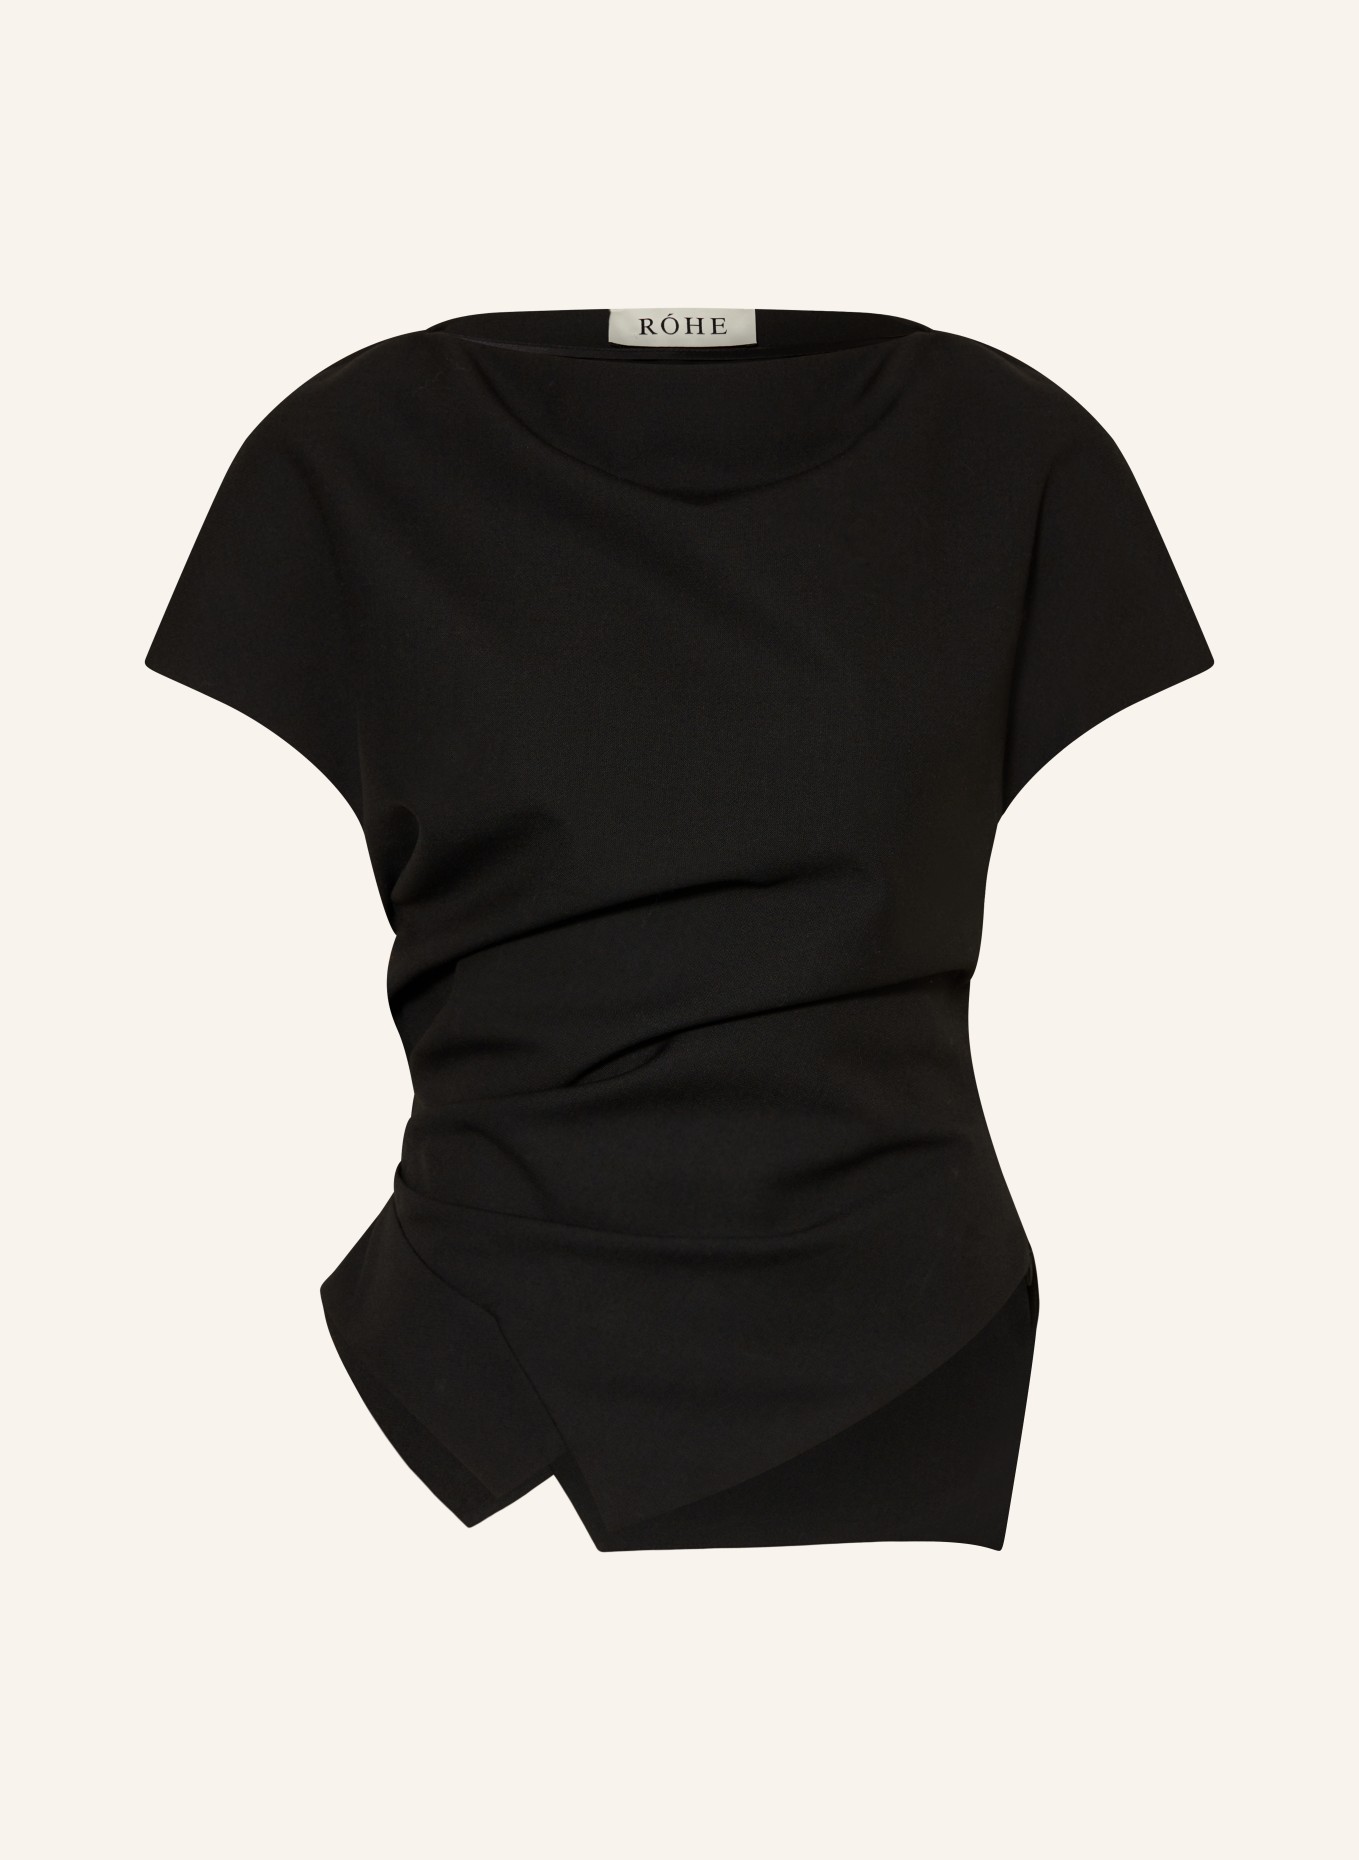 RÓHE Blouse top, Color: BLACK (Image 1)